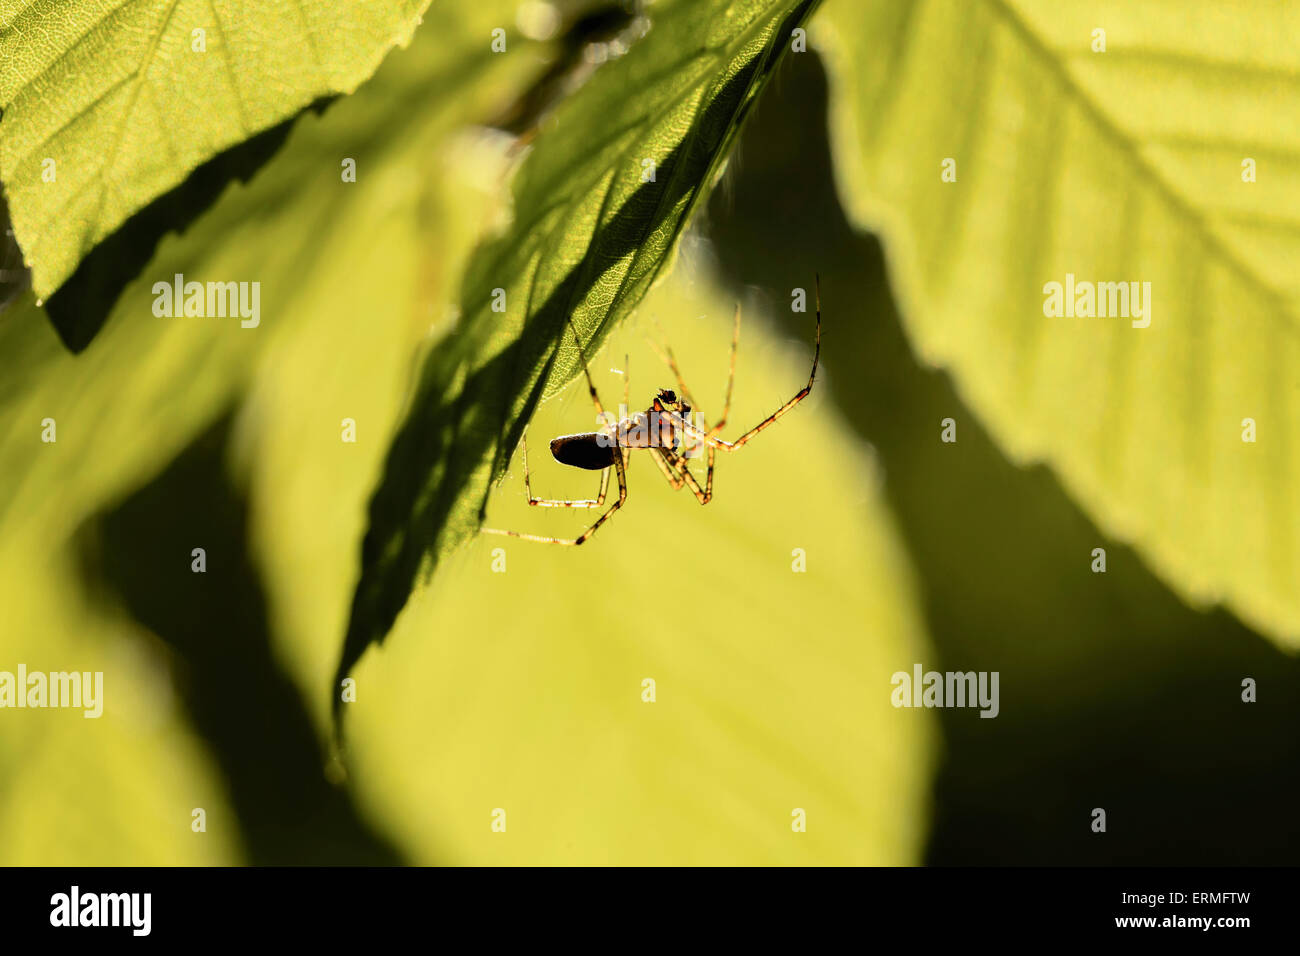 Spider, Mont Saint-Bruno National Park, Monteregie region; Quebec, Canada Stock Photo